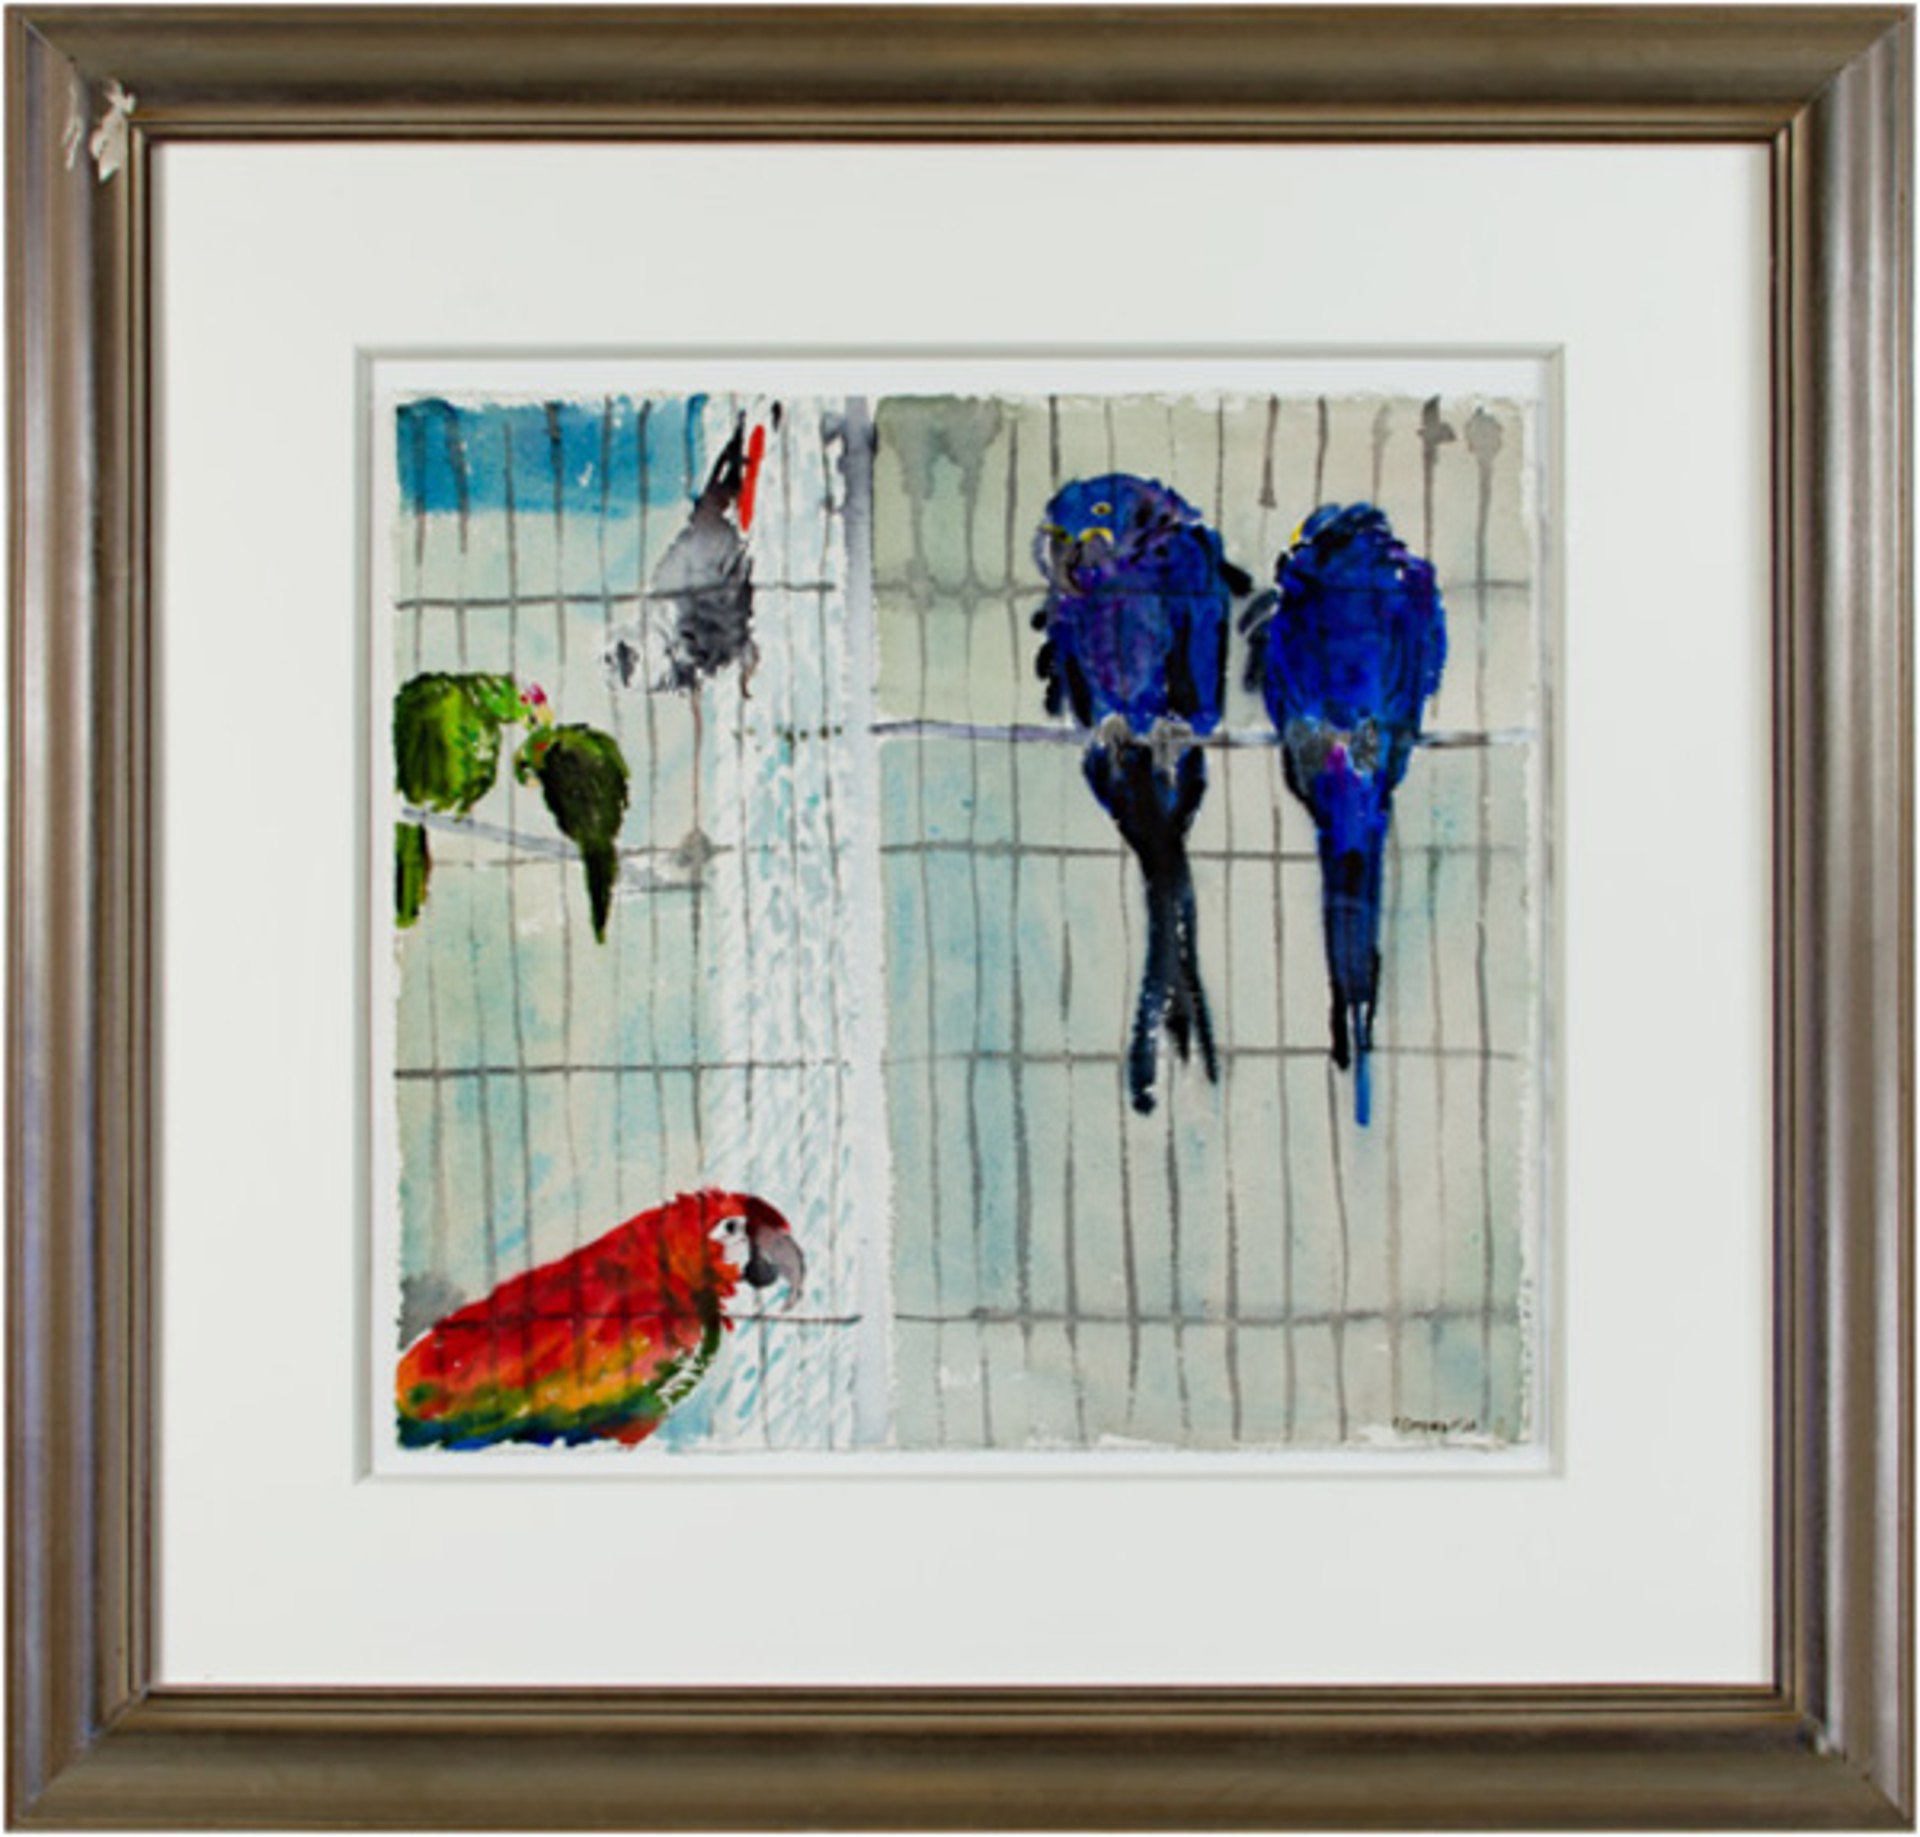 Parrots by Alicia Czechowski